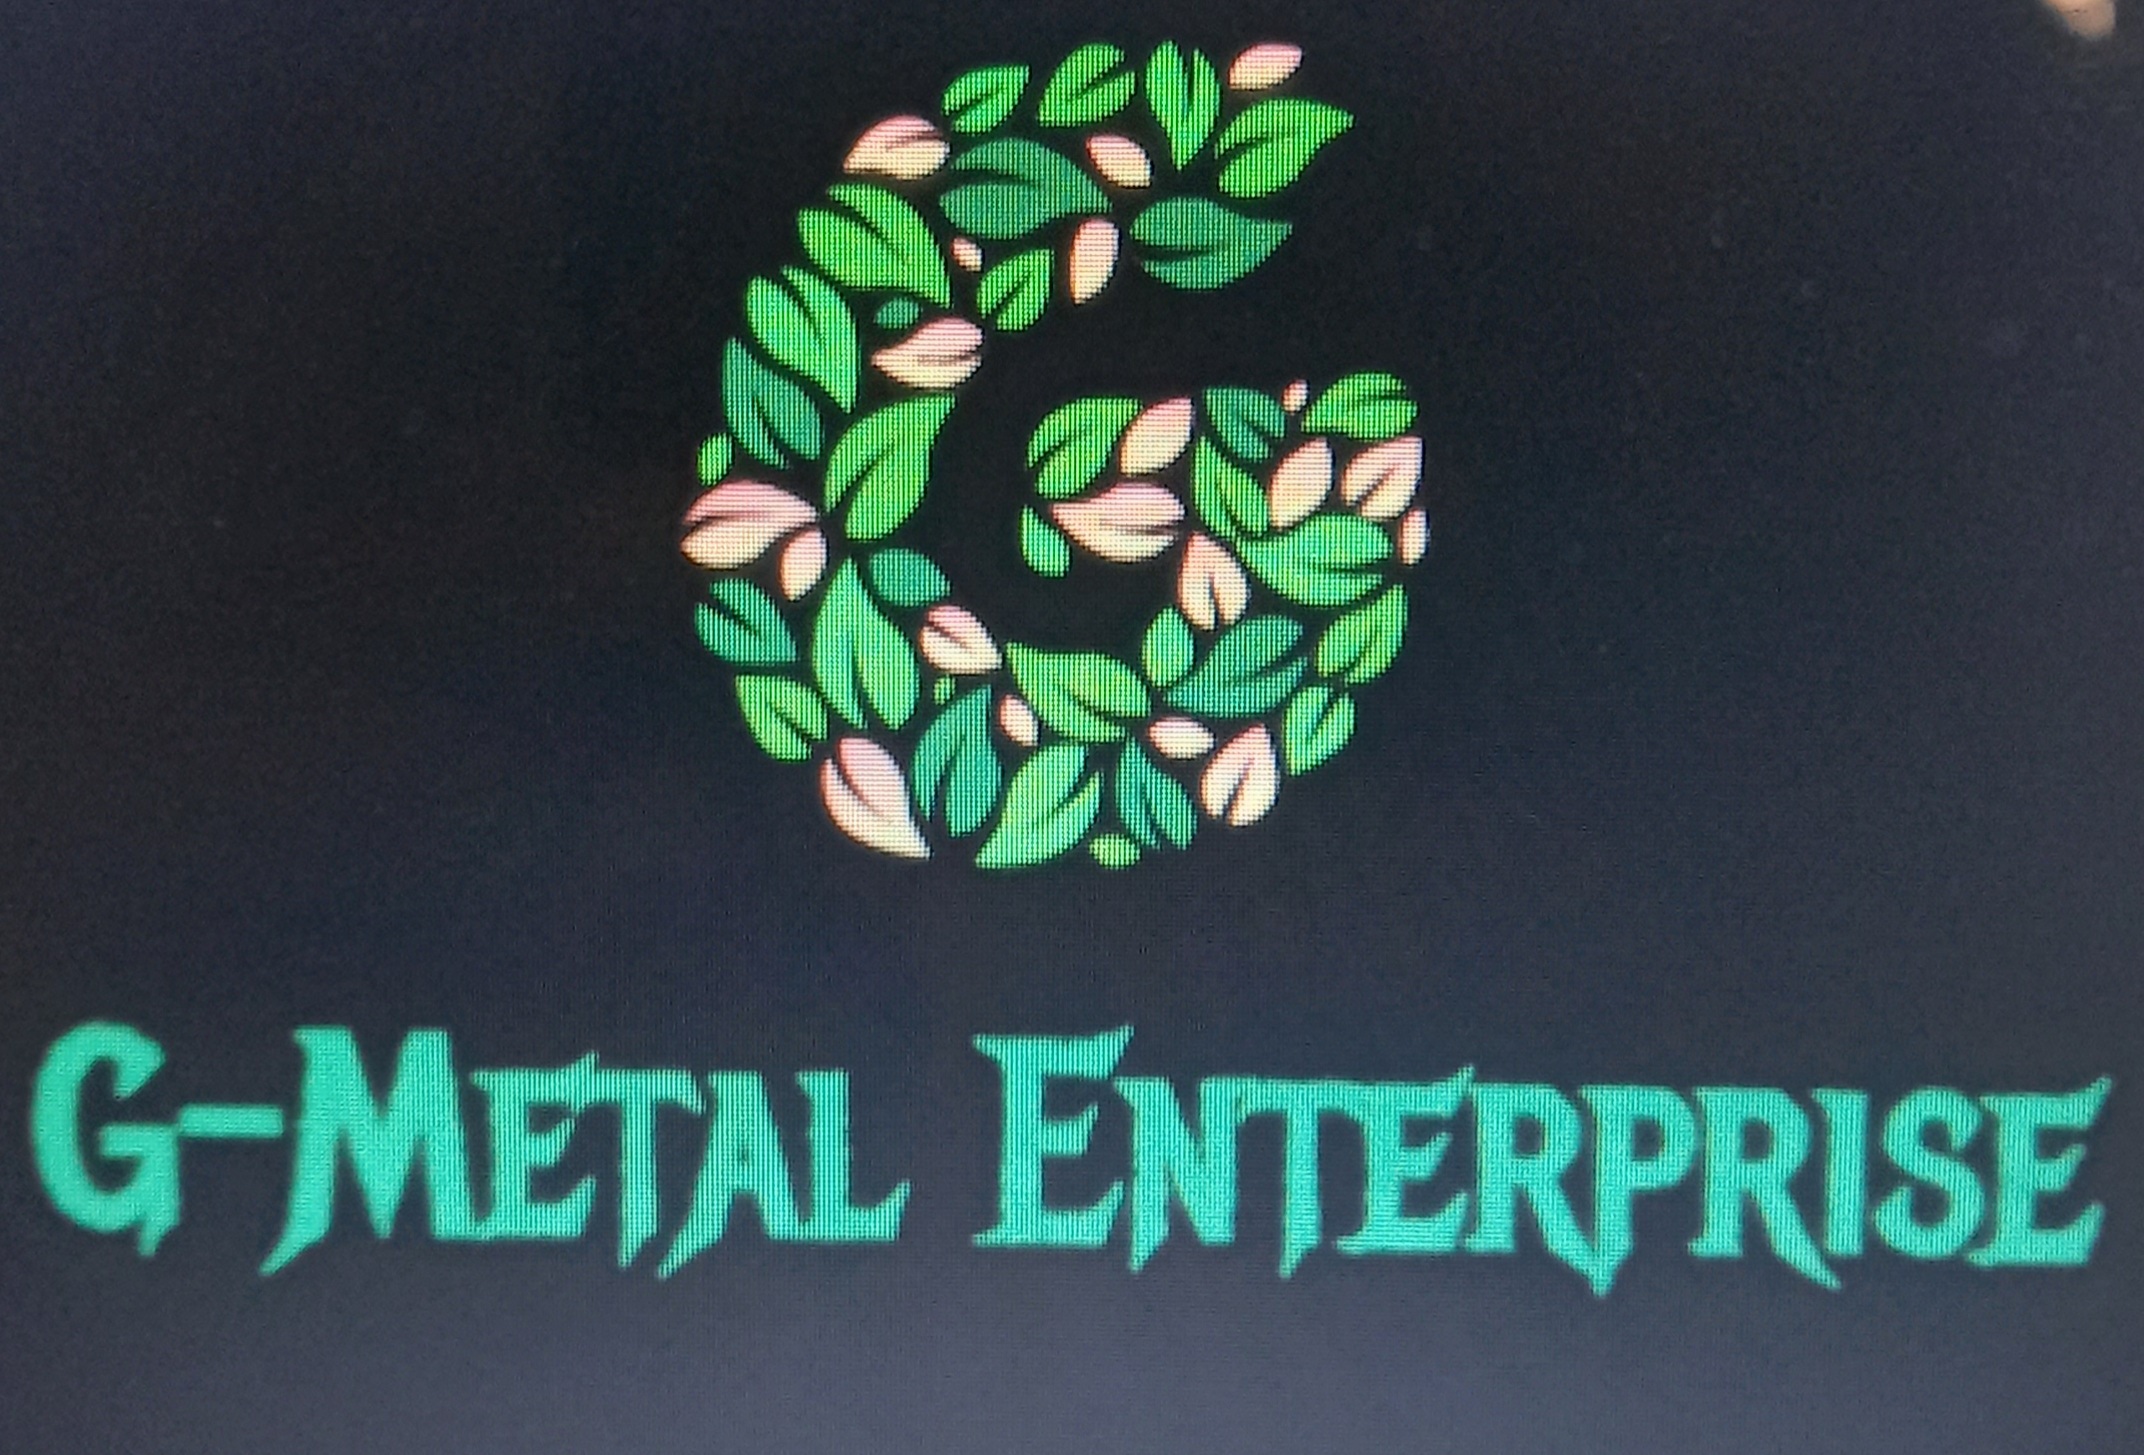 G-Metal Enterprise Pvt Ltd